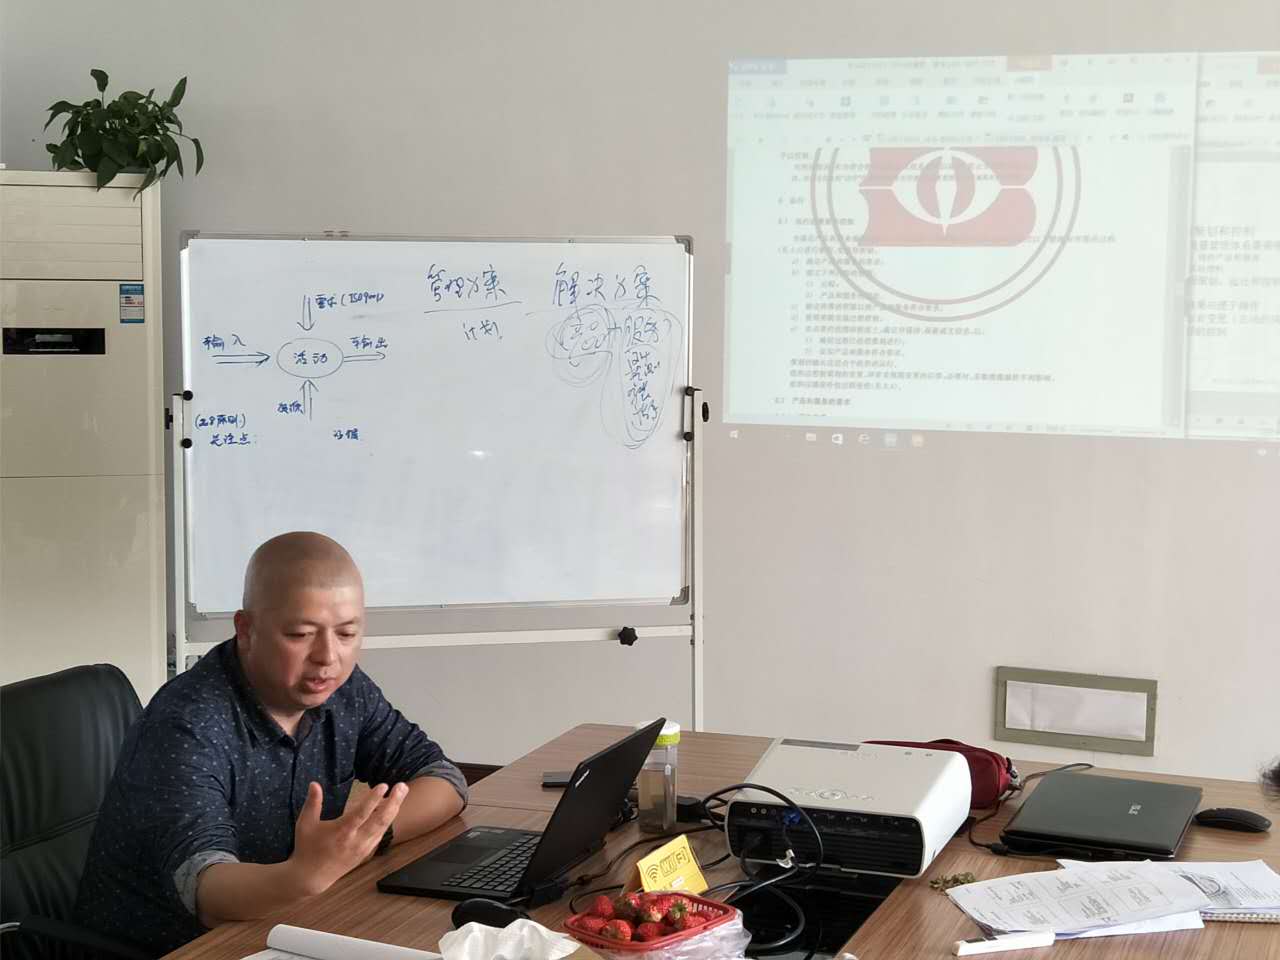 杭州桑迪电器有限公司完成ISO9001:2015质量管理体系宣贯培训